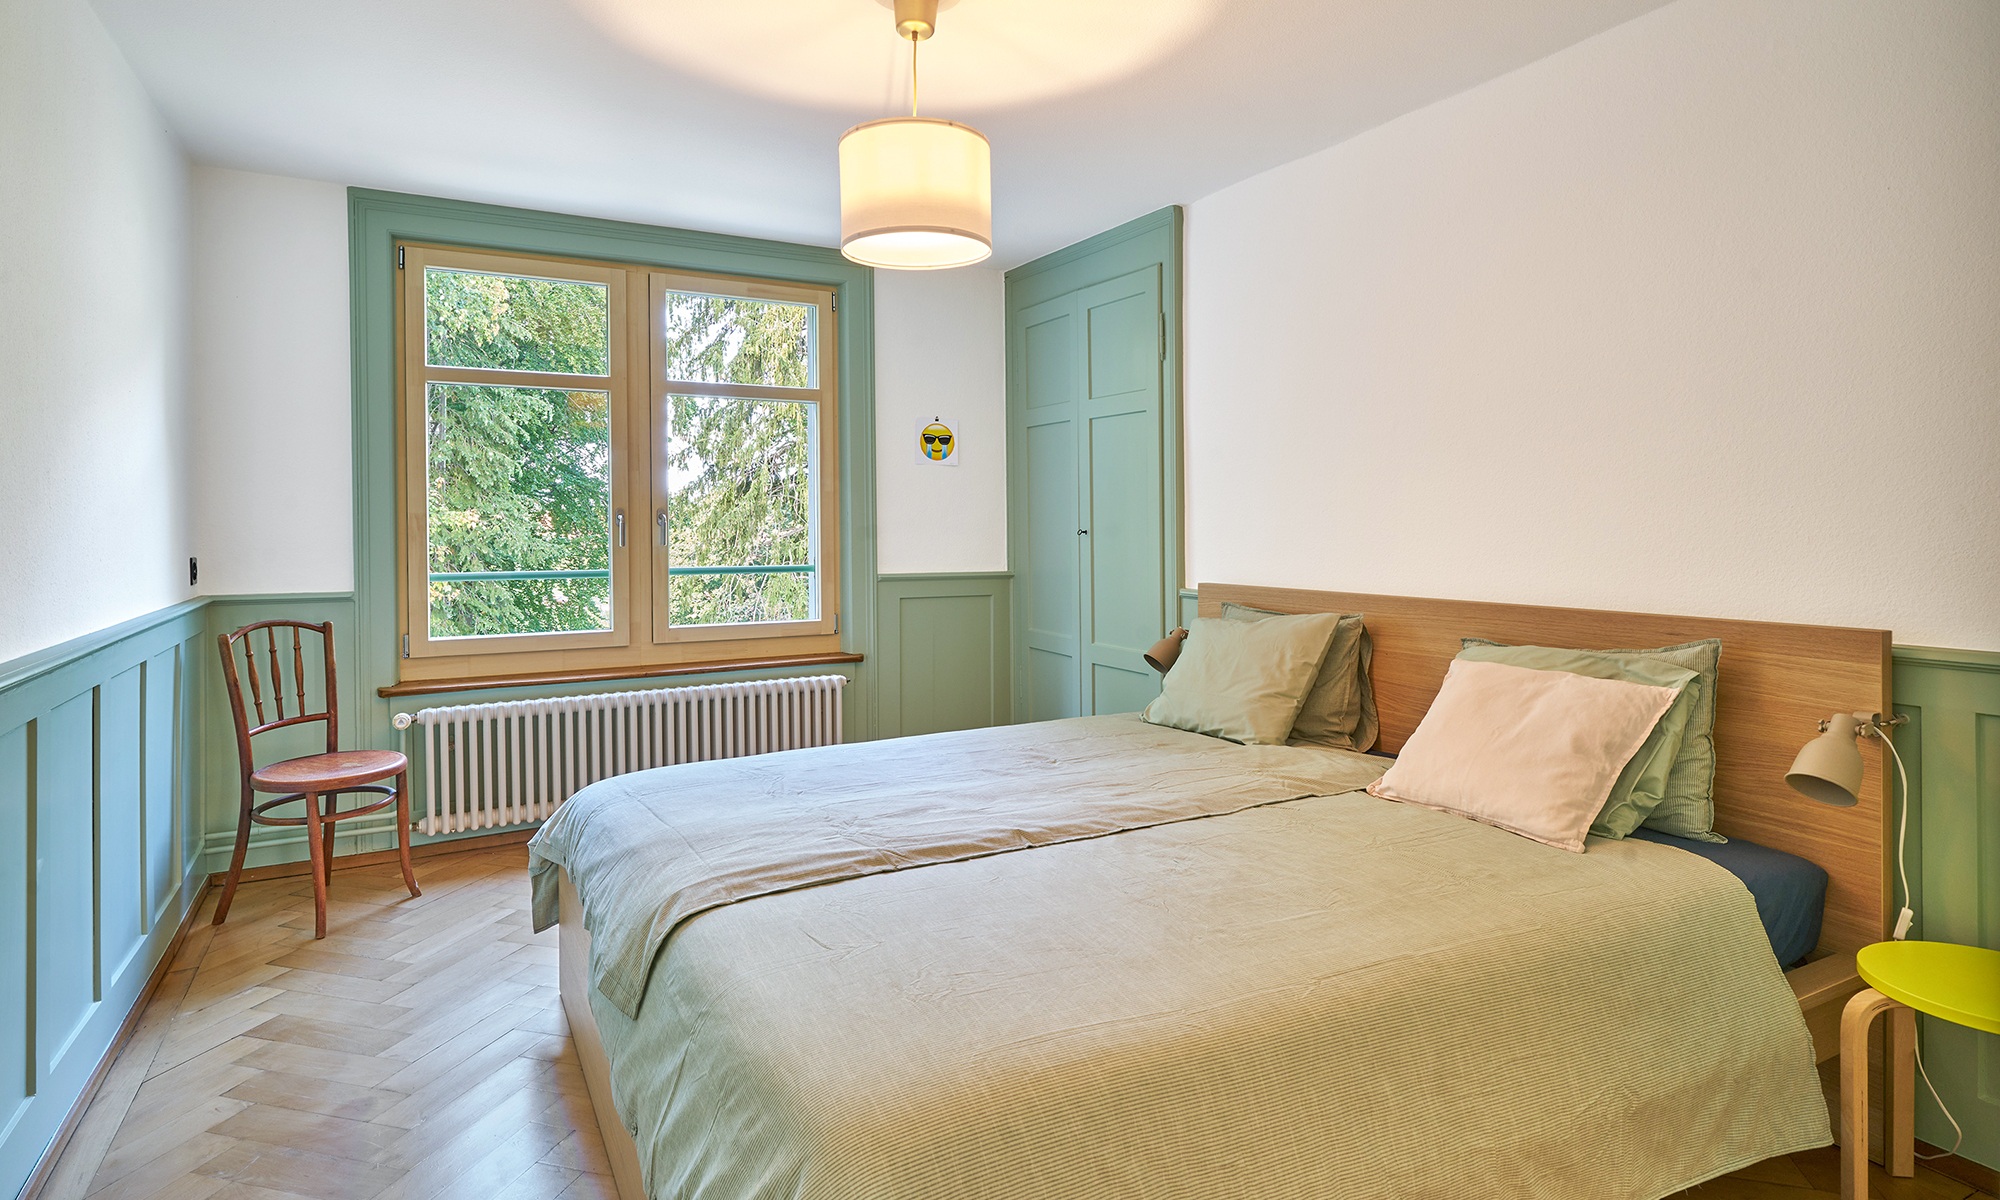 Schlafzimmer mit Holz-Fussboden und hellgrünen Akzenten<br/><br/>